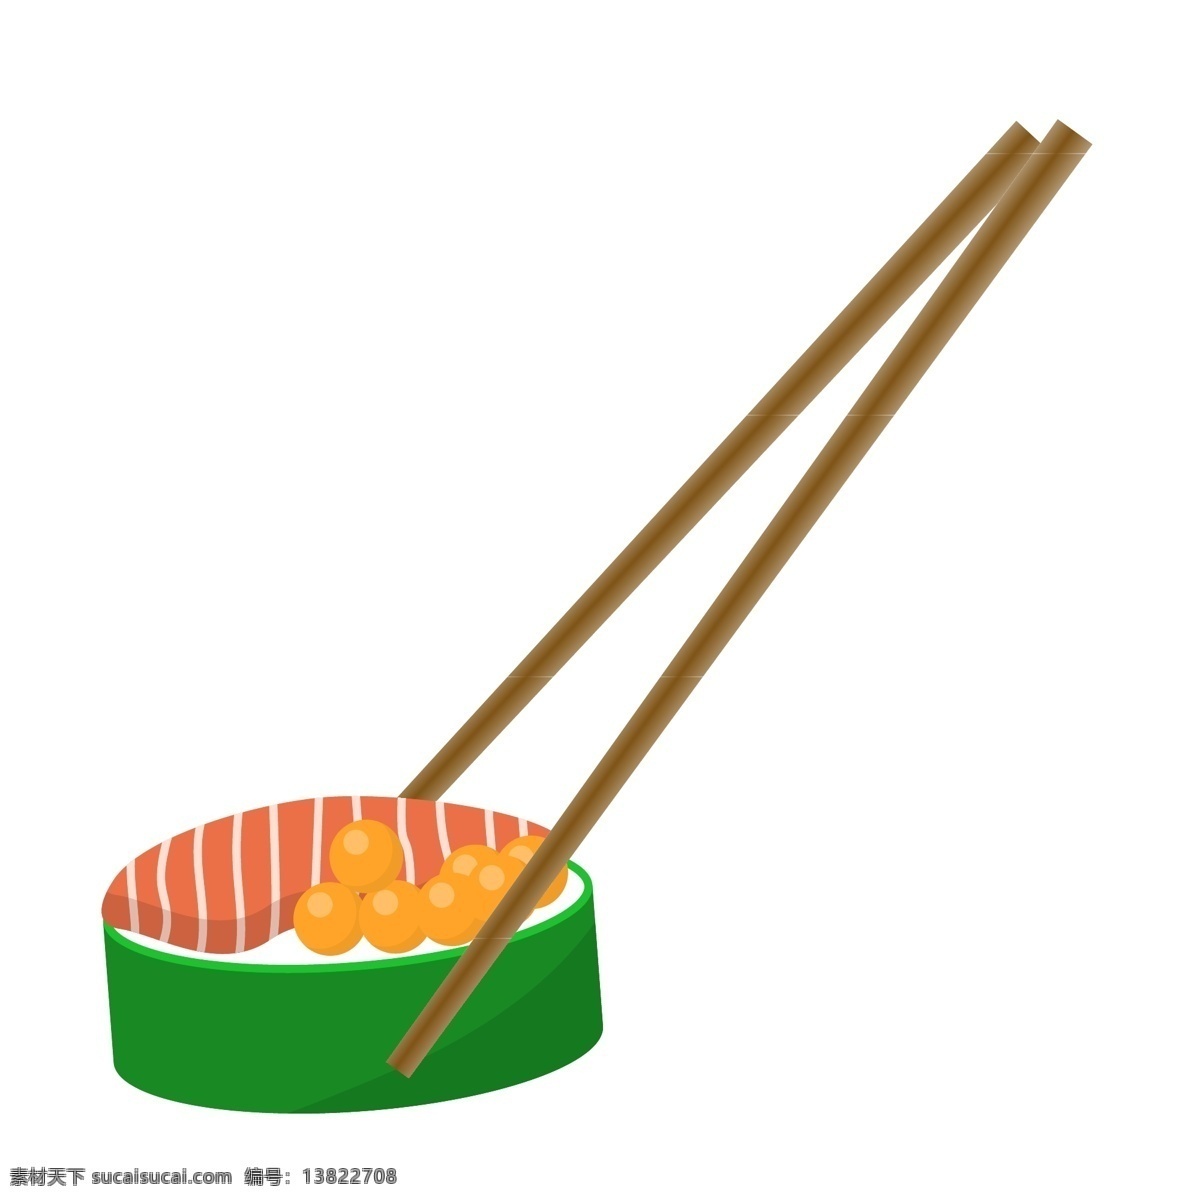 美味 日式 寿司 插画 筷子 日本寿司 美味的料理 日式寿司插画 水果寿司 食物 日本食物 料理